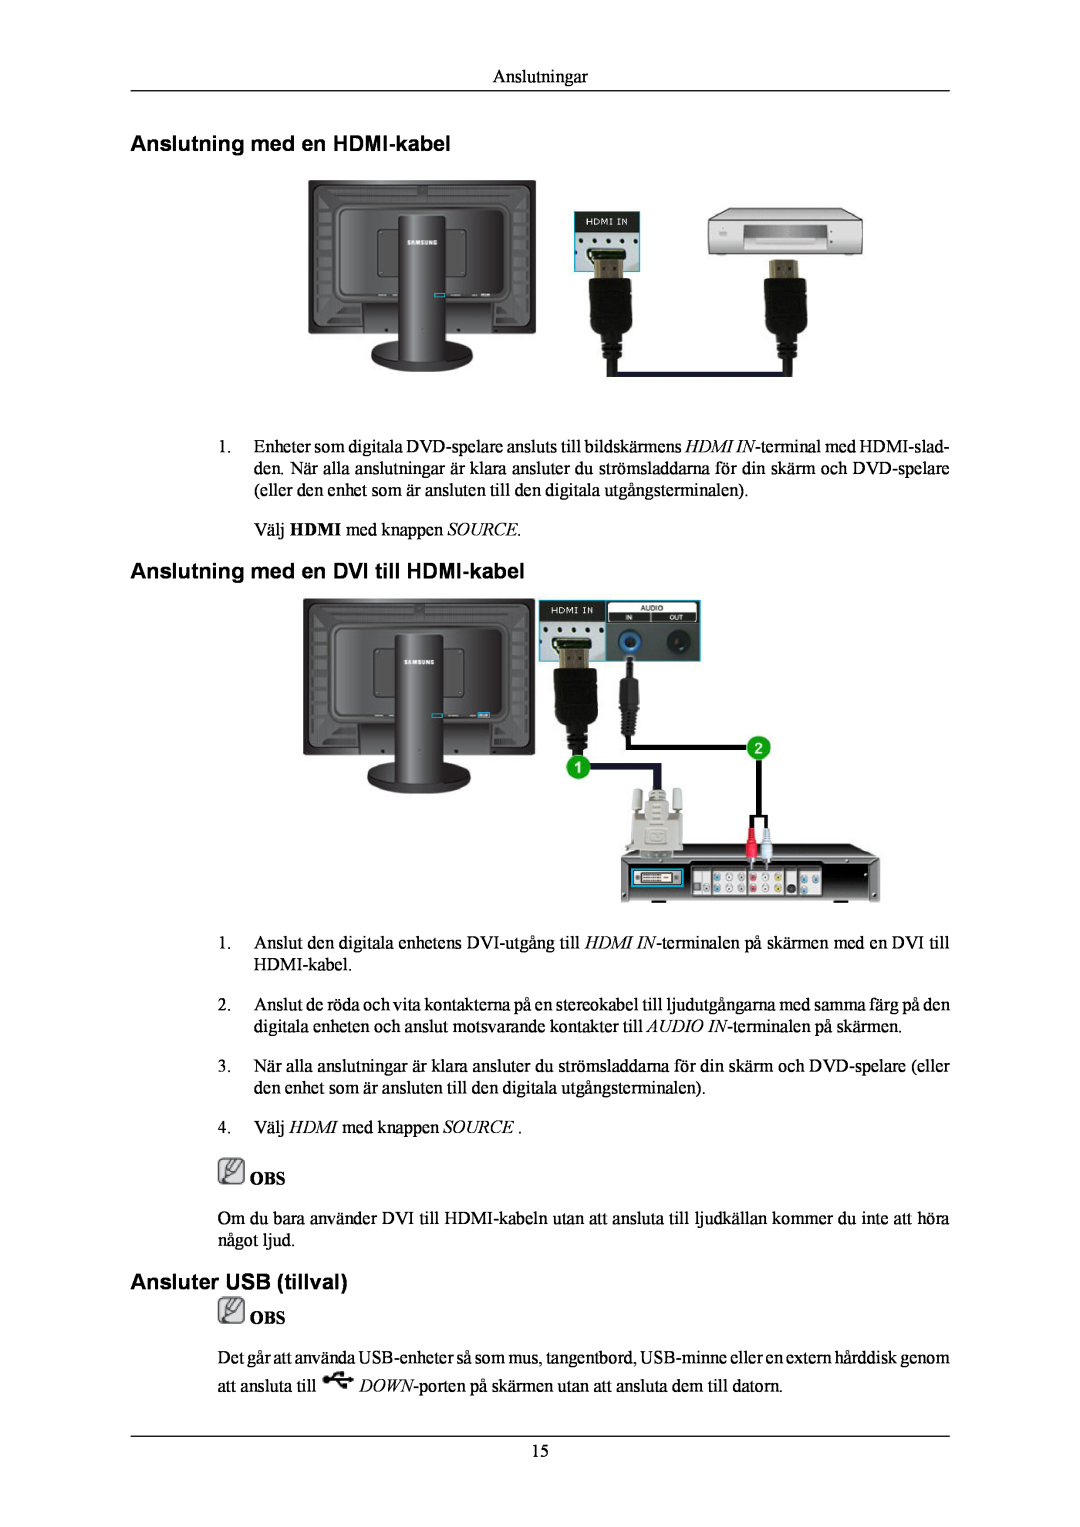 Samsung LS24KIEEFV/EDC manual Anslutning med en HDMI-kabel, Anslutning med en DVI till HDMI-kabel, Ansluter USB tillval 